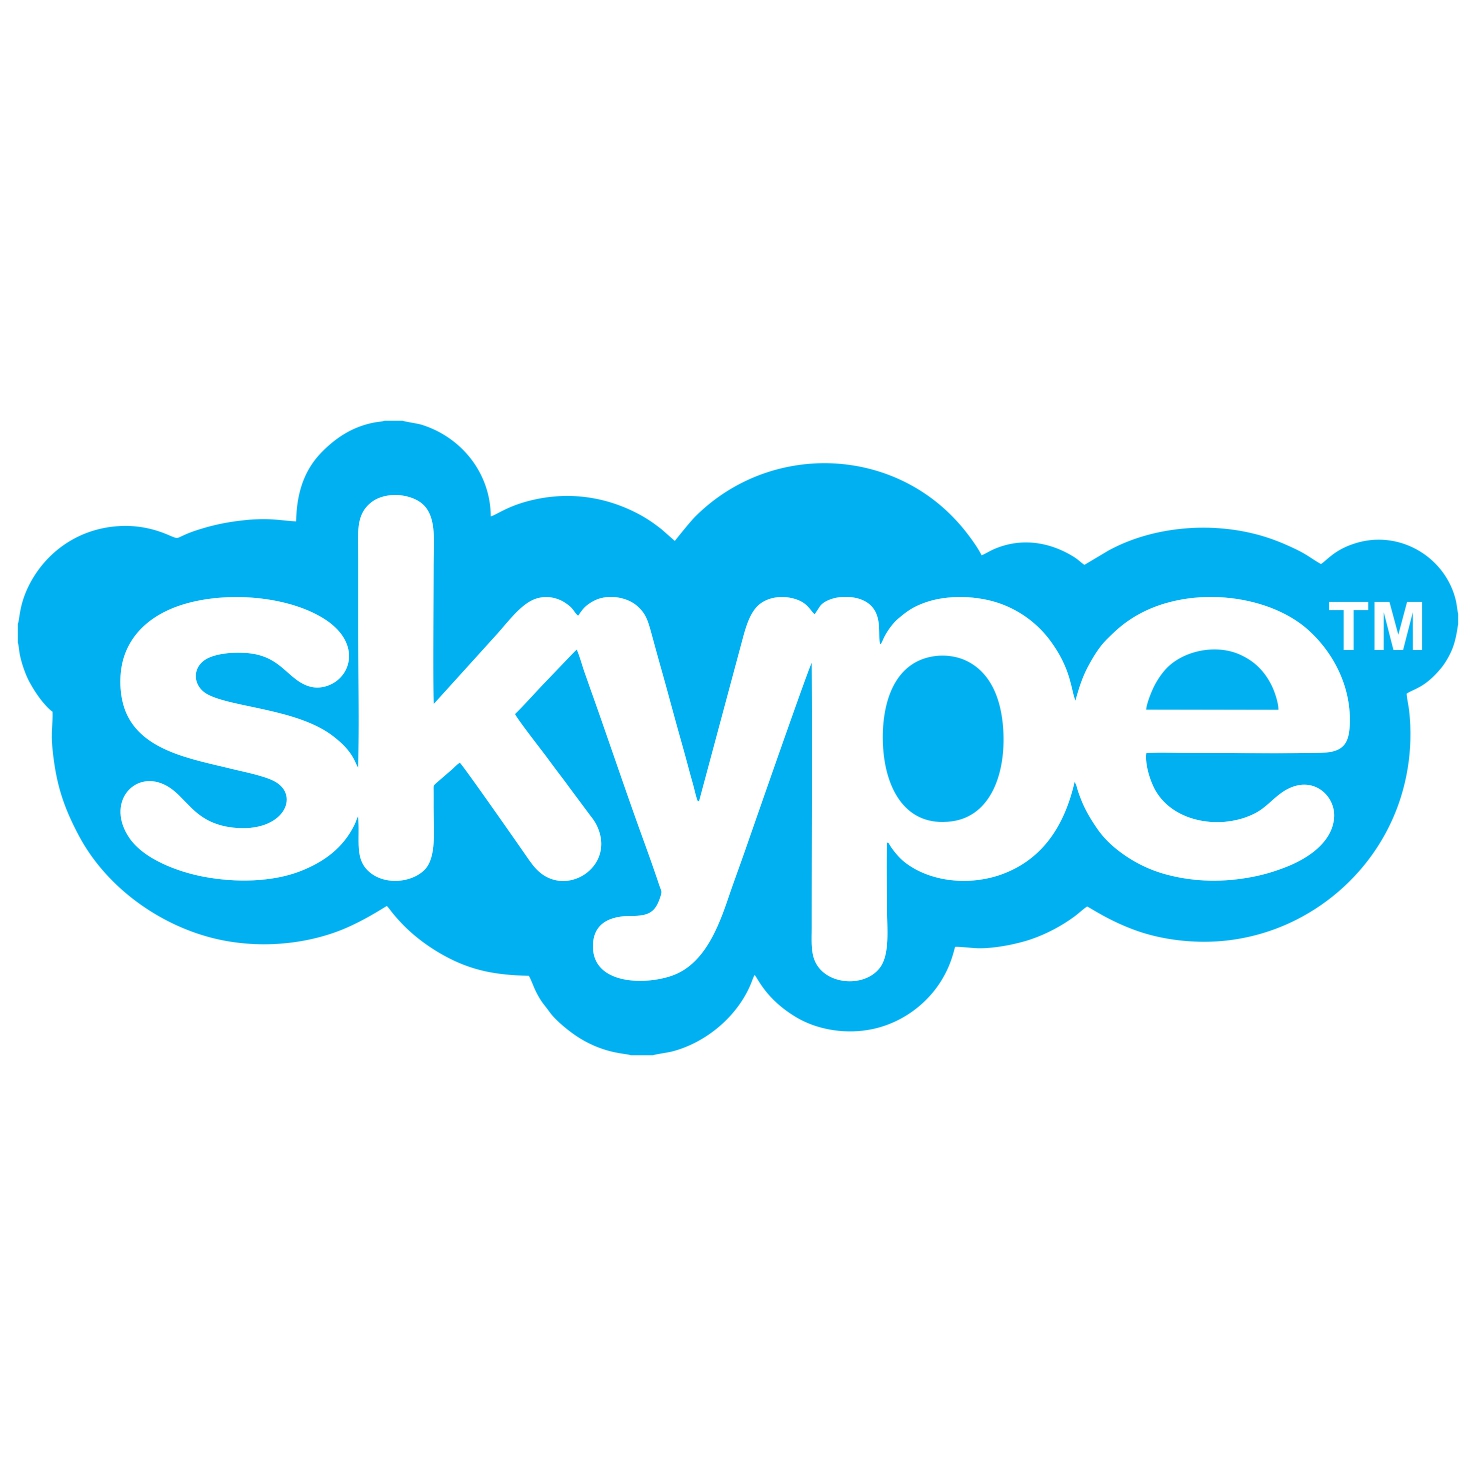 Descargar Logo Vectorizado skype Gratis